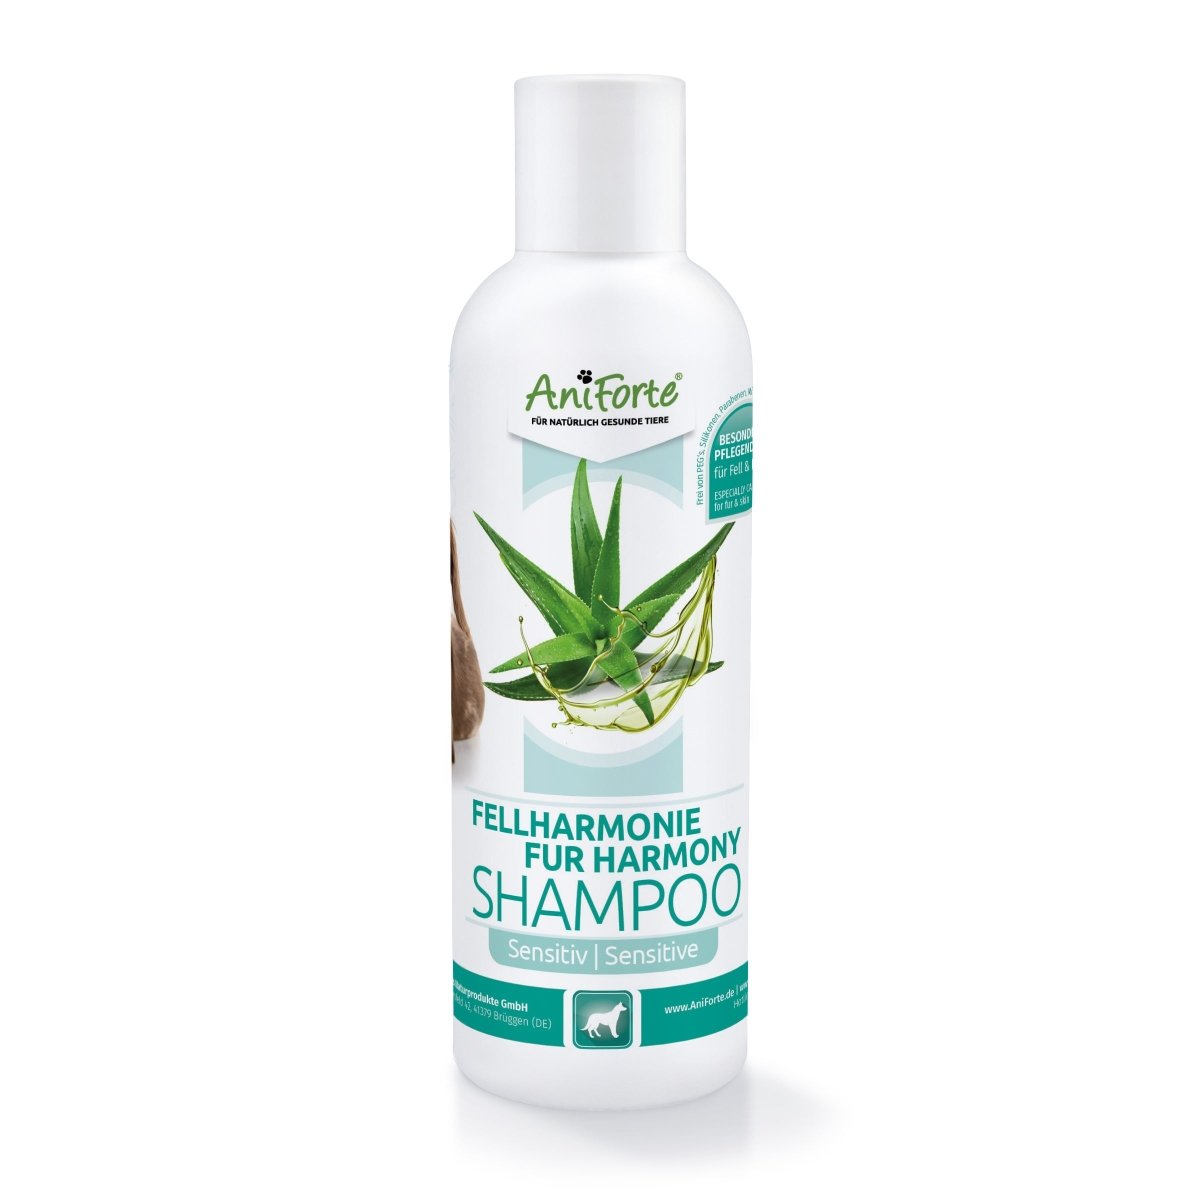 Fellharmonie Shampoo Sensitiv